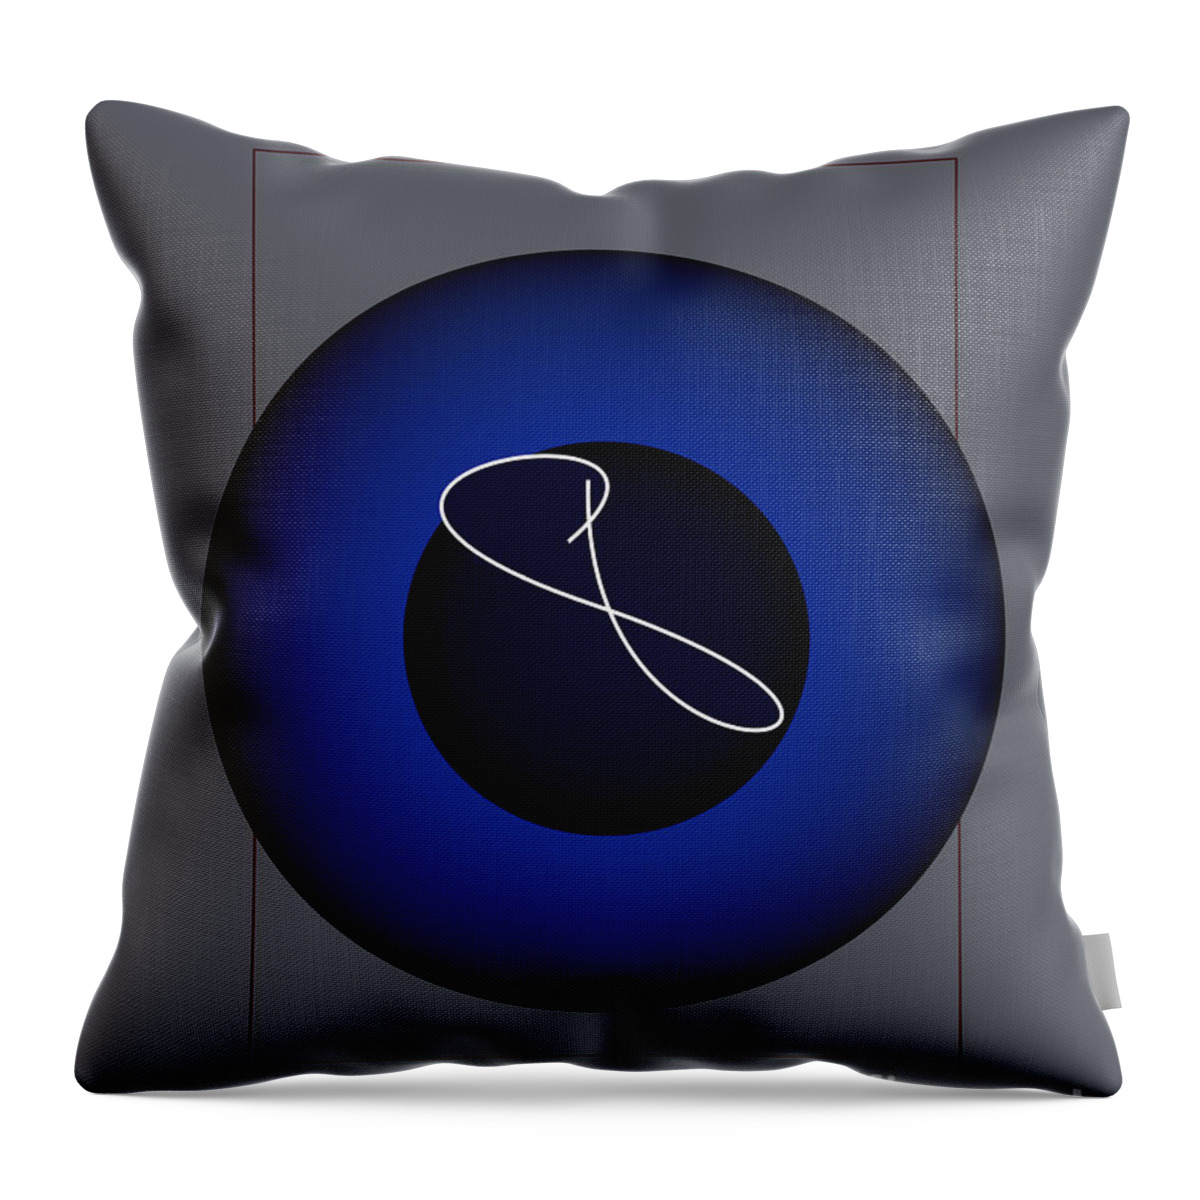 Abstract Throw Pillow featuring the digital art 8 Ball by John Krakora